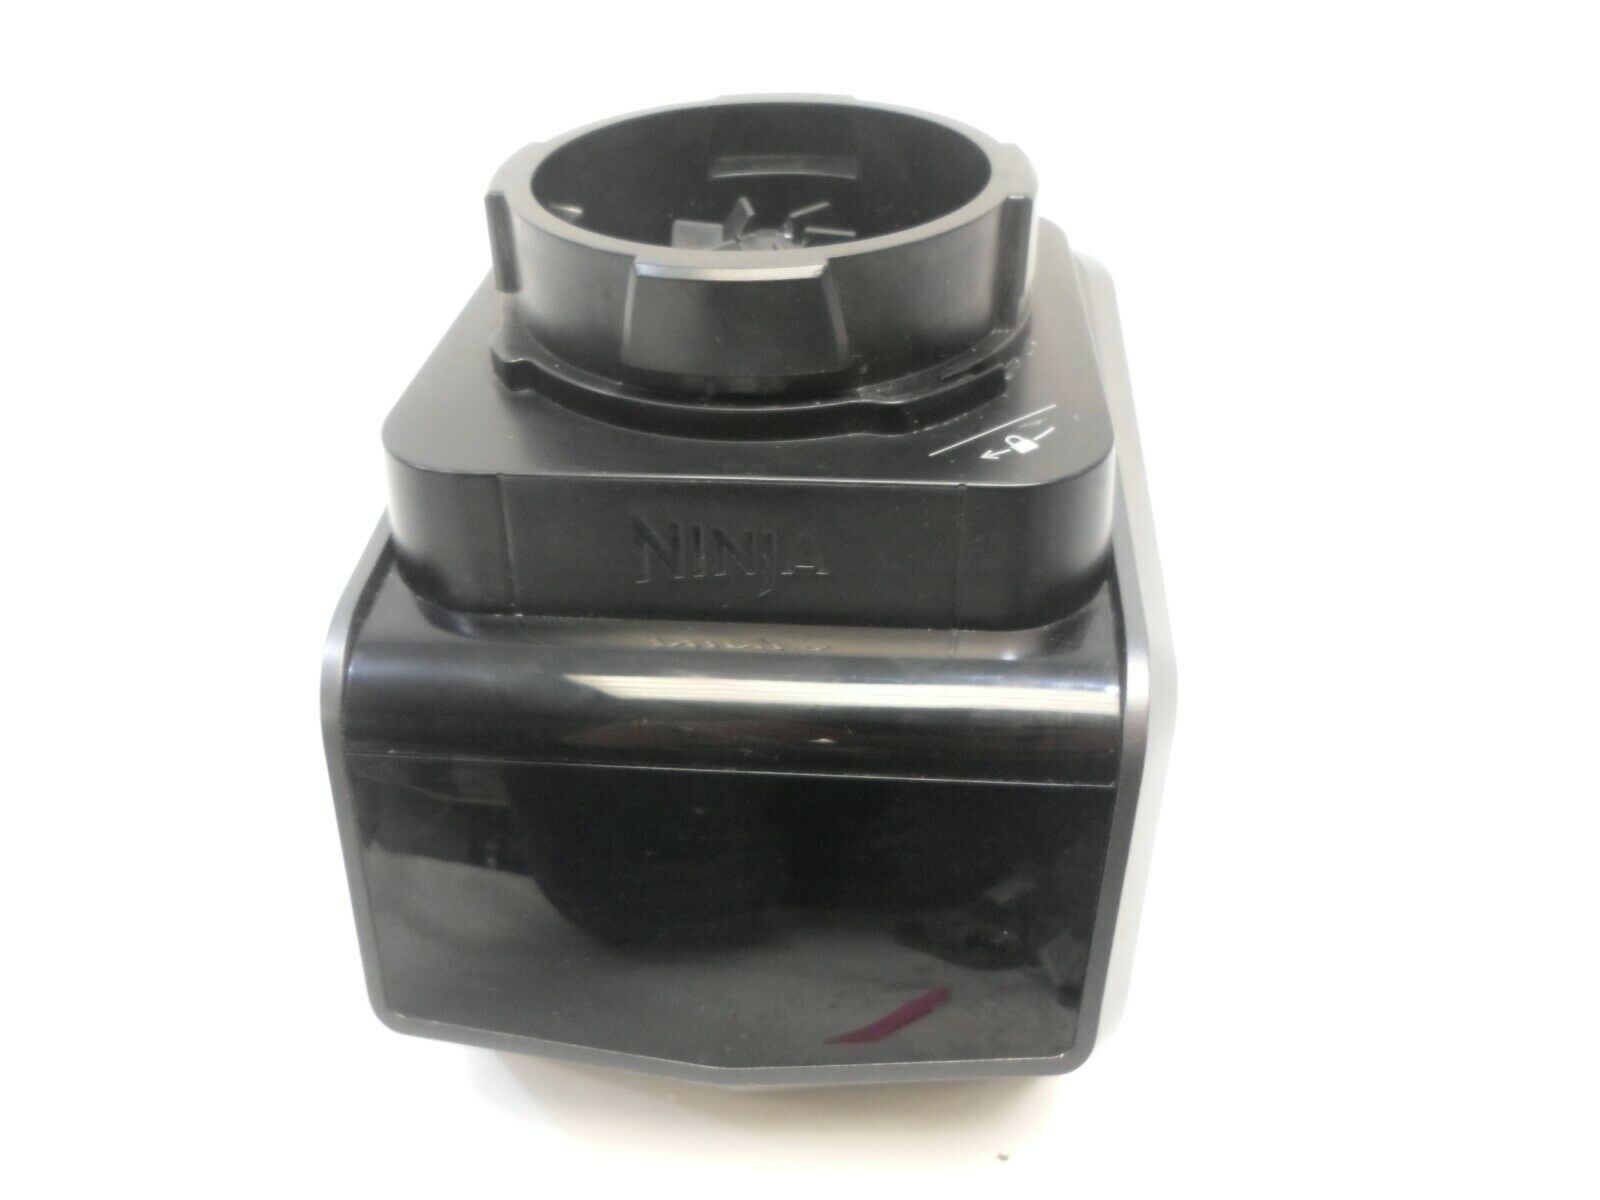 Ninja Professional Touchscreen Blender Motor Only Model CT650